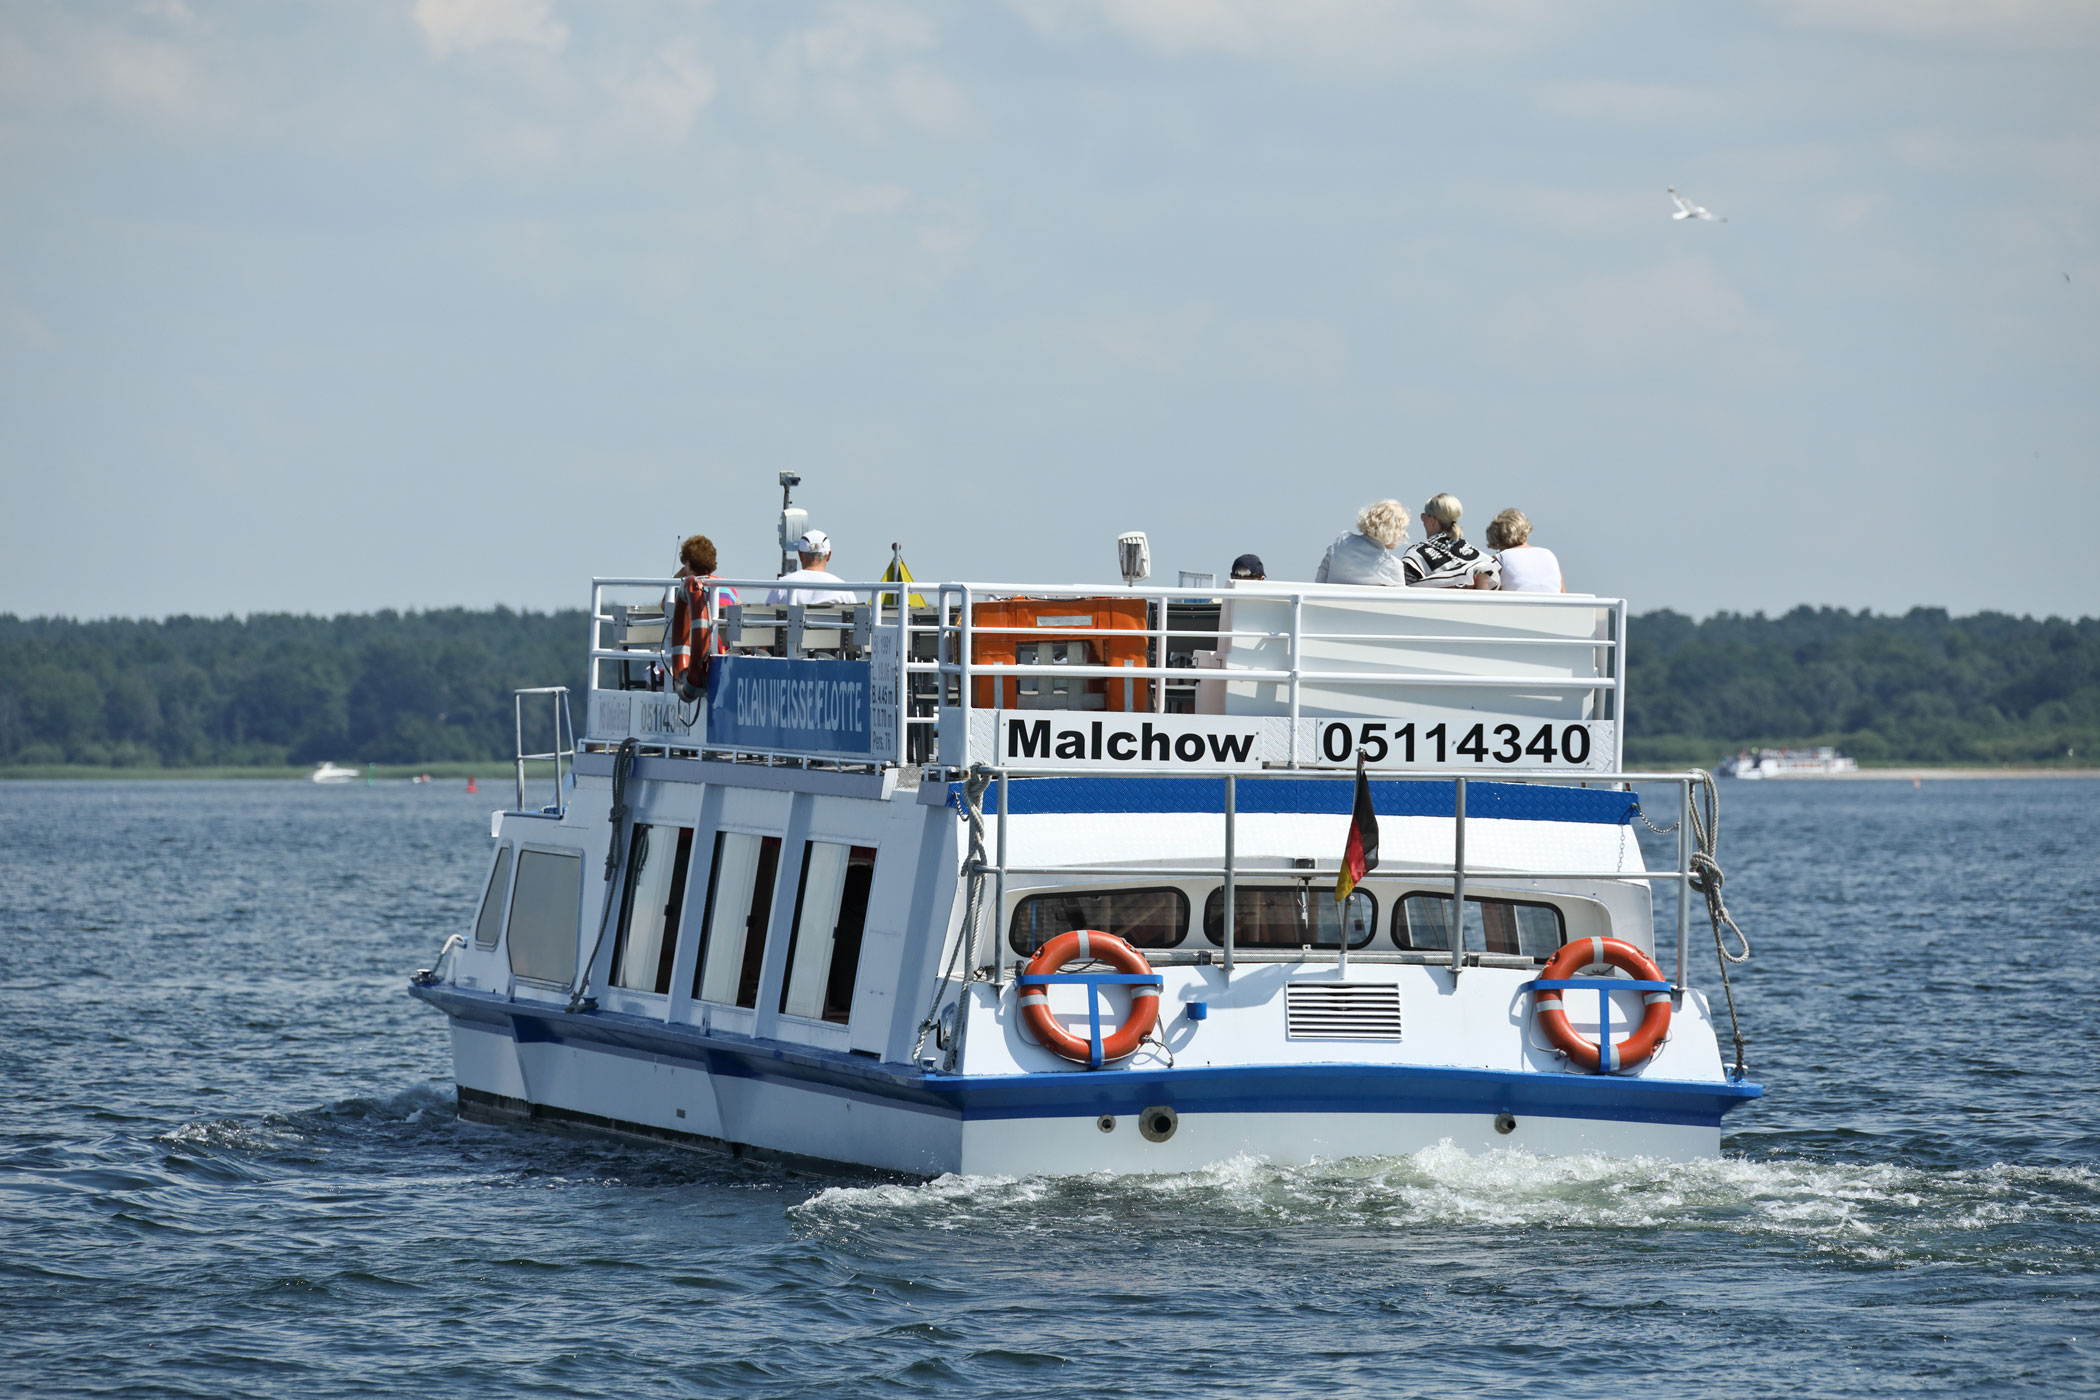 2-Seenfahrt zur Inselstadt Malchow | Dauer: 3 Stunden | ca. 2h Landgang in Malchow